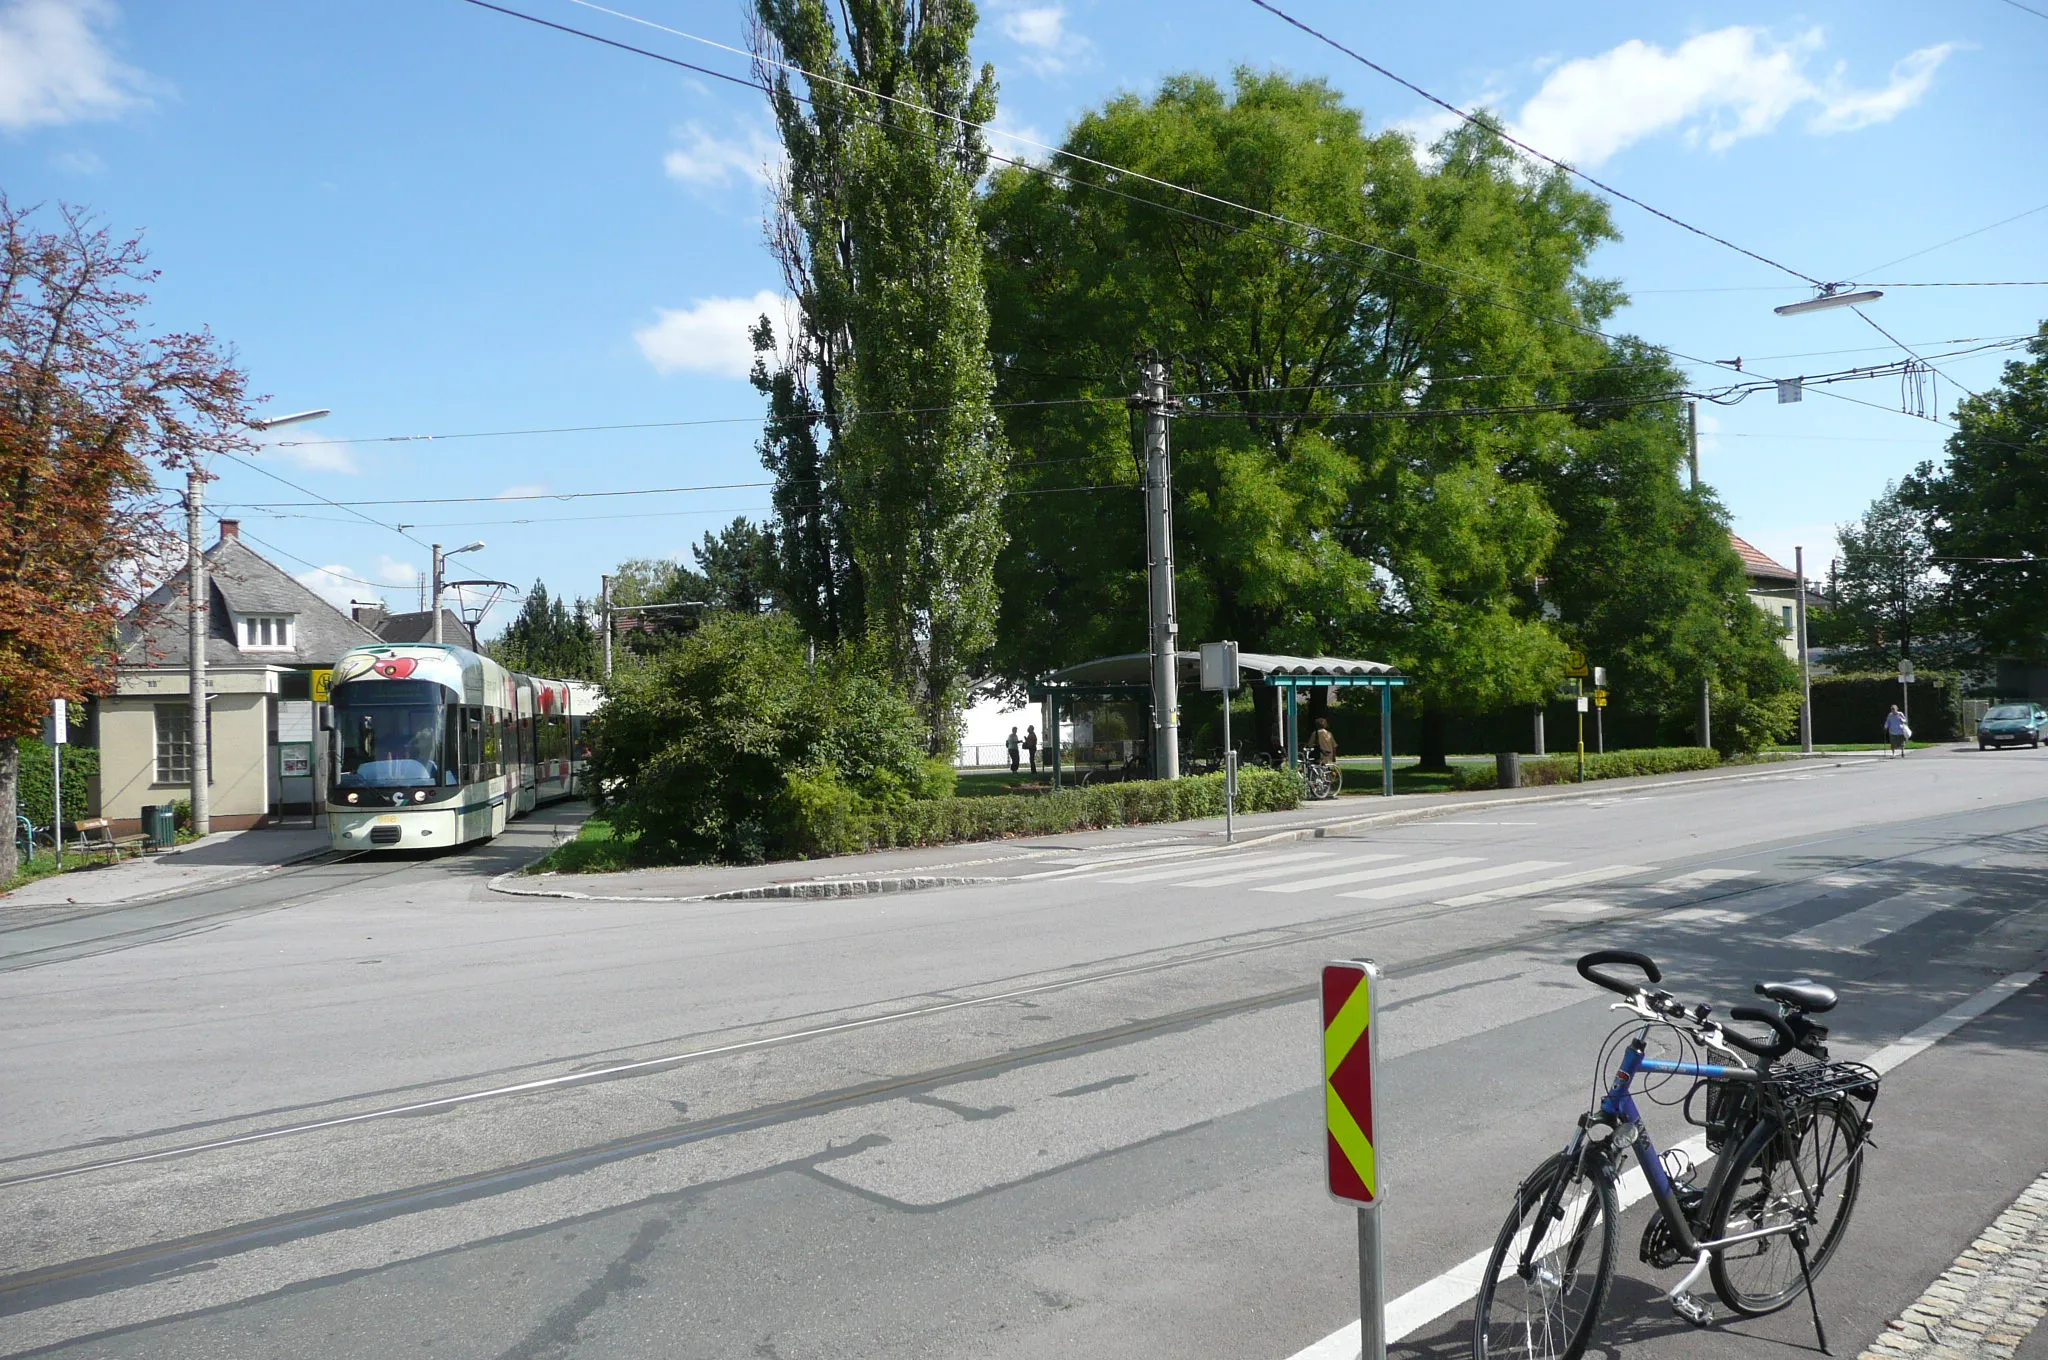 Photo showing: Endhaltestelle der Straßenbahnline 7 der GVB, Graz